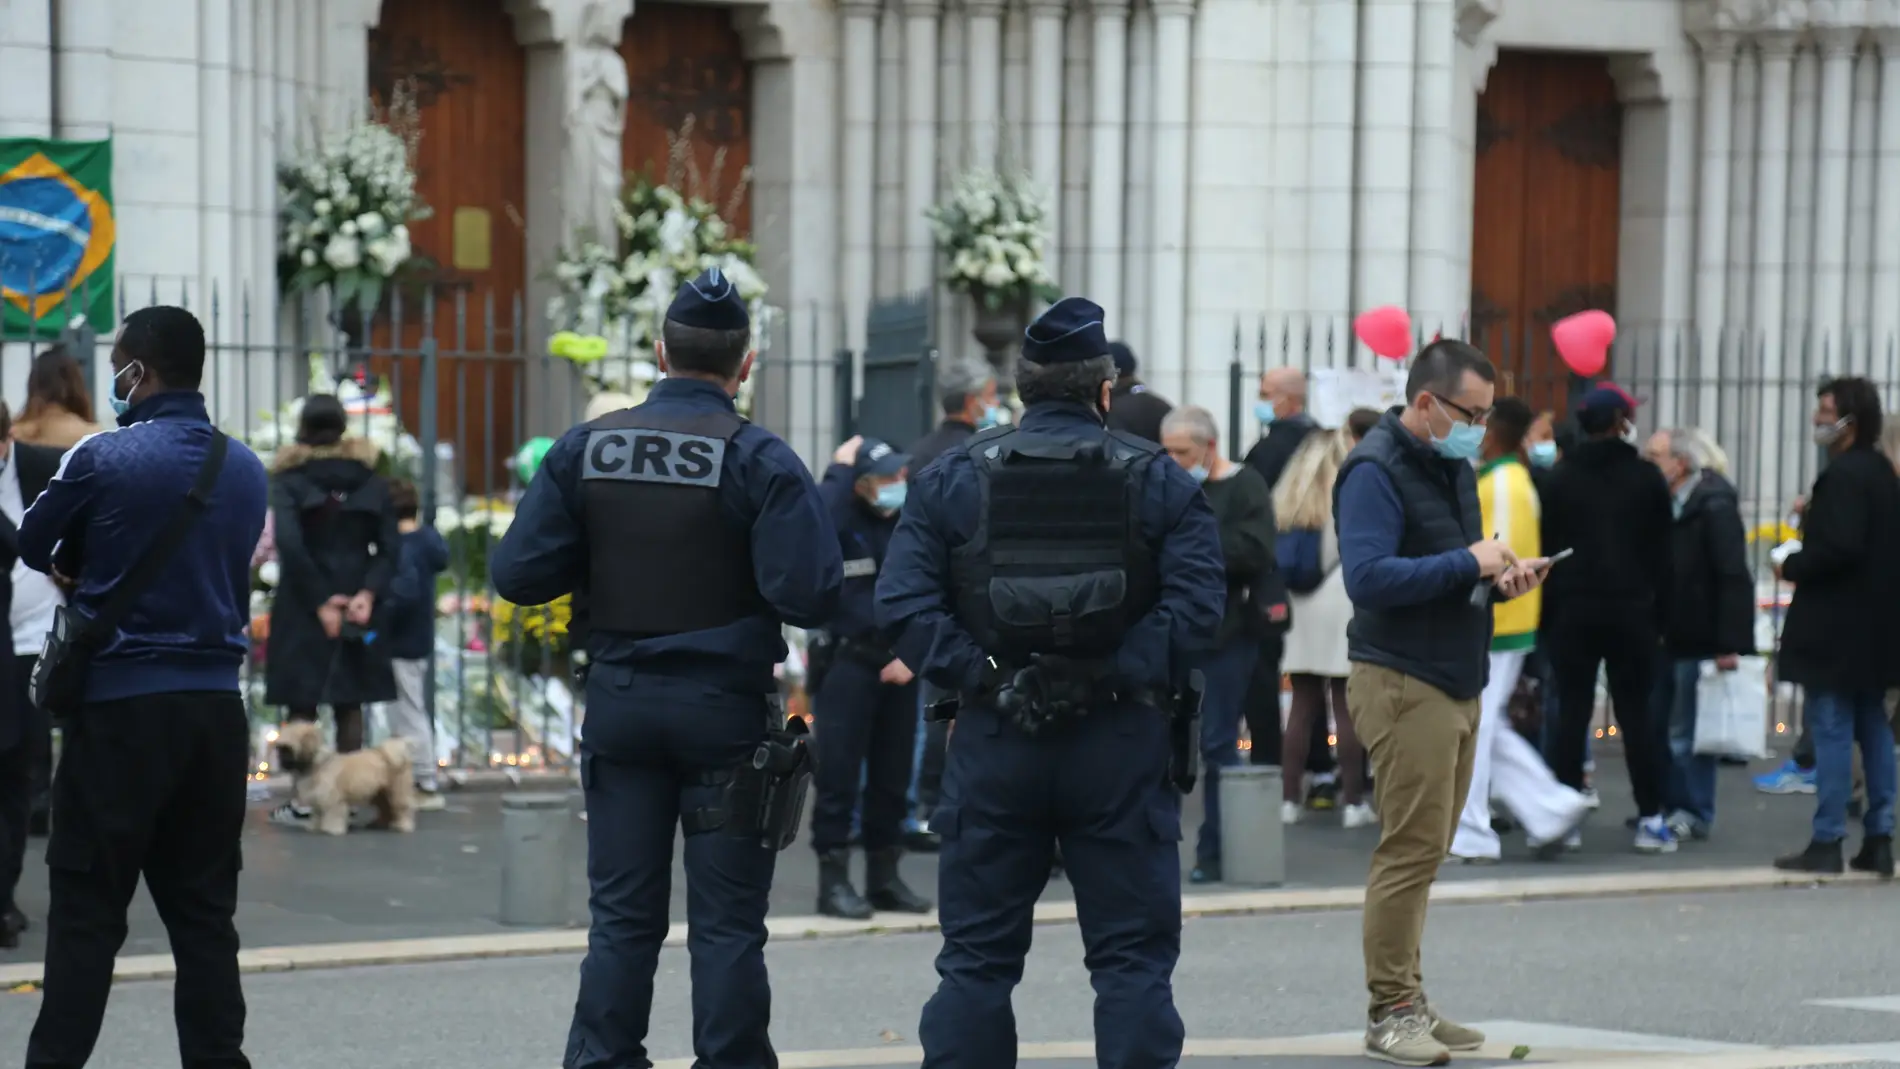 De 2 a 18 años de prisión para los ocho acusados del atentado de Niza